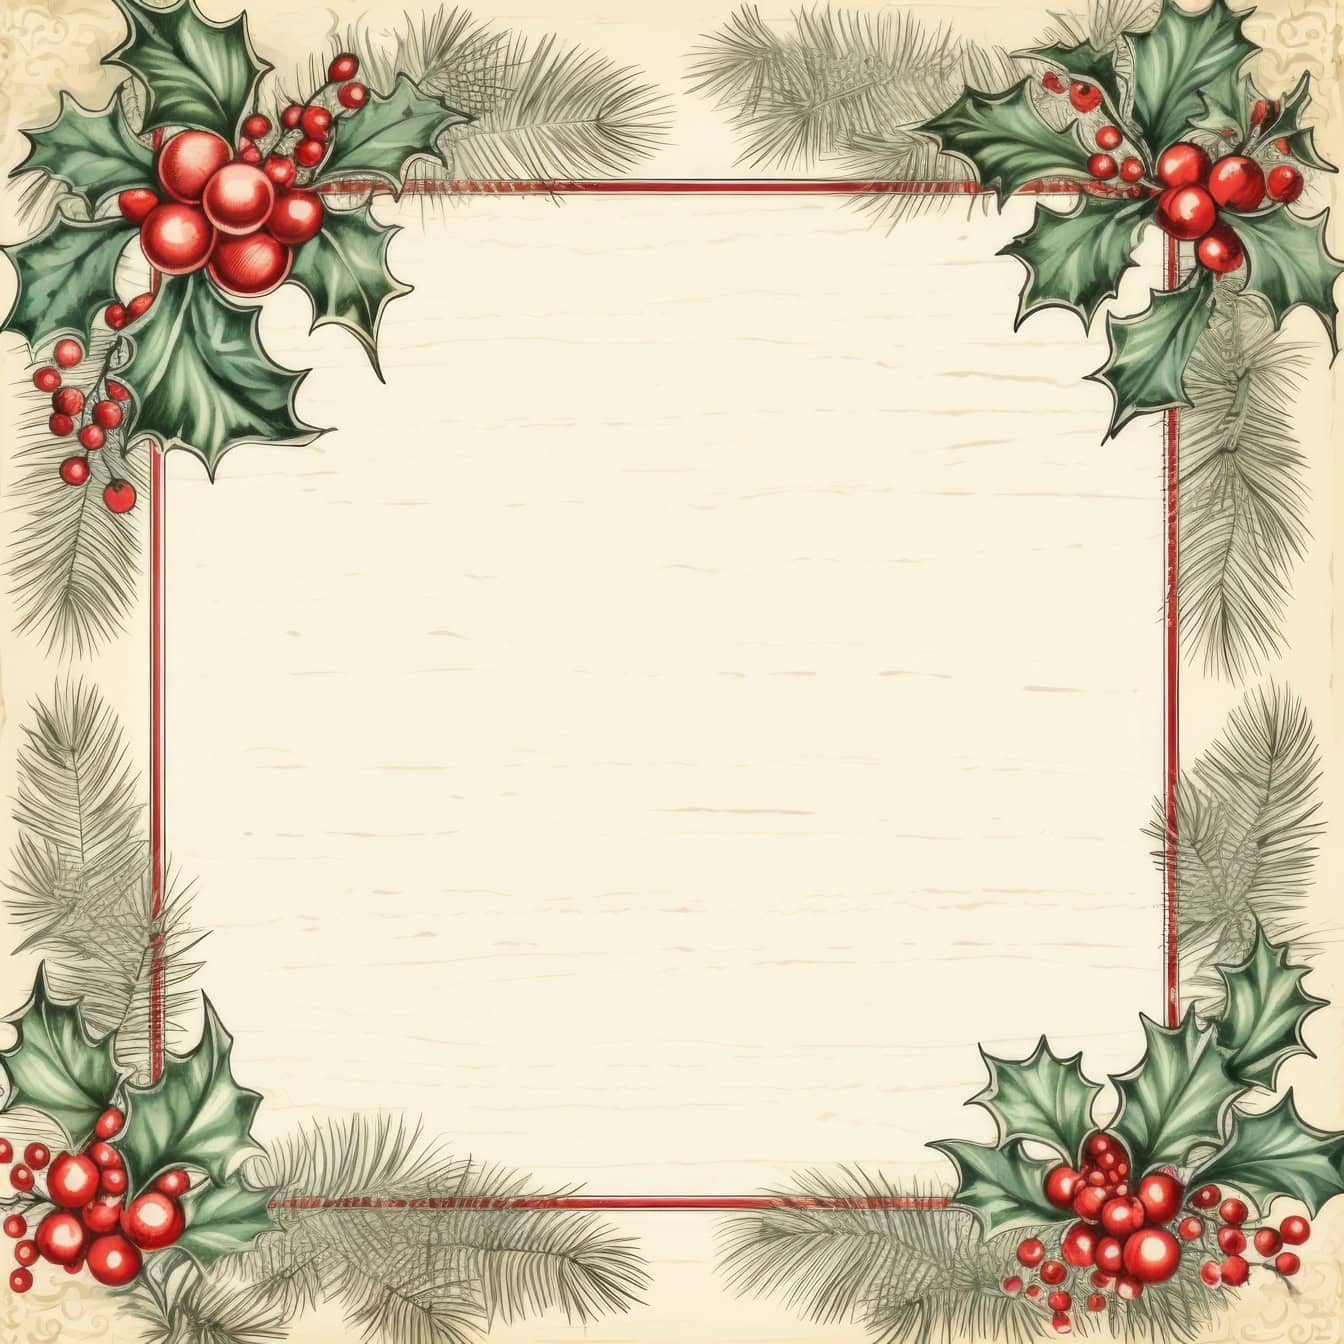 Szablon kartki z życzeniami noworocznym w stylu retro z kwadratową ramką z wieńcem z ostrokrzewu z jagodami i gałęziami sosny